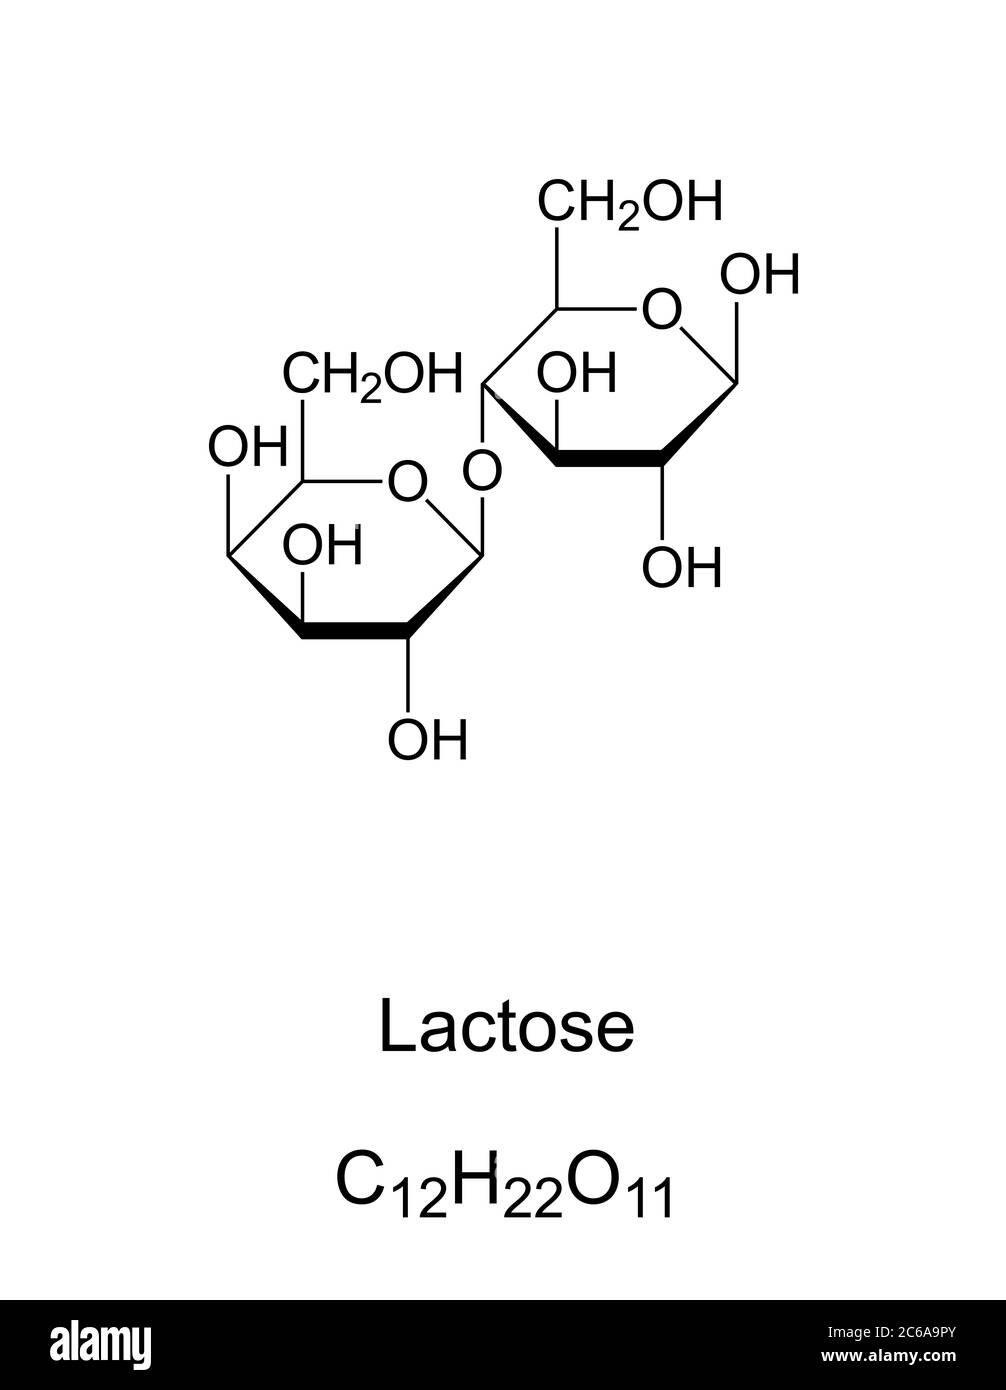 Lattosio, zucchero di latte, struttura chimica. Un disaccaride composto dai due monosaccaridi galattosio e glucosio. Trovato in prodotti lattiero-caseari. Foto Stock